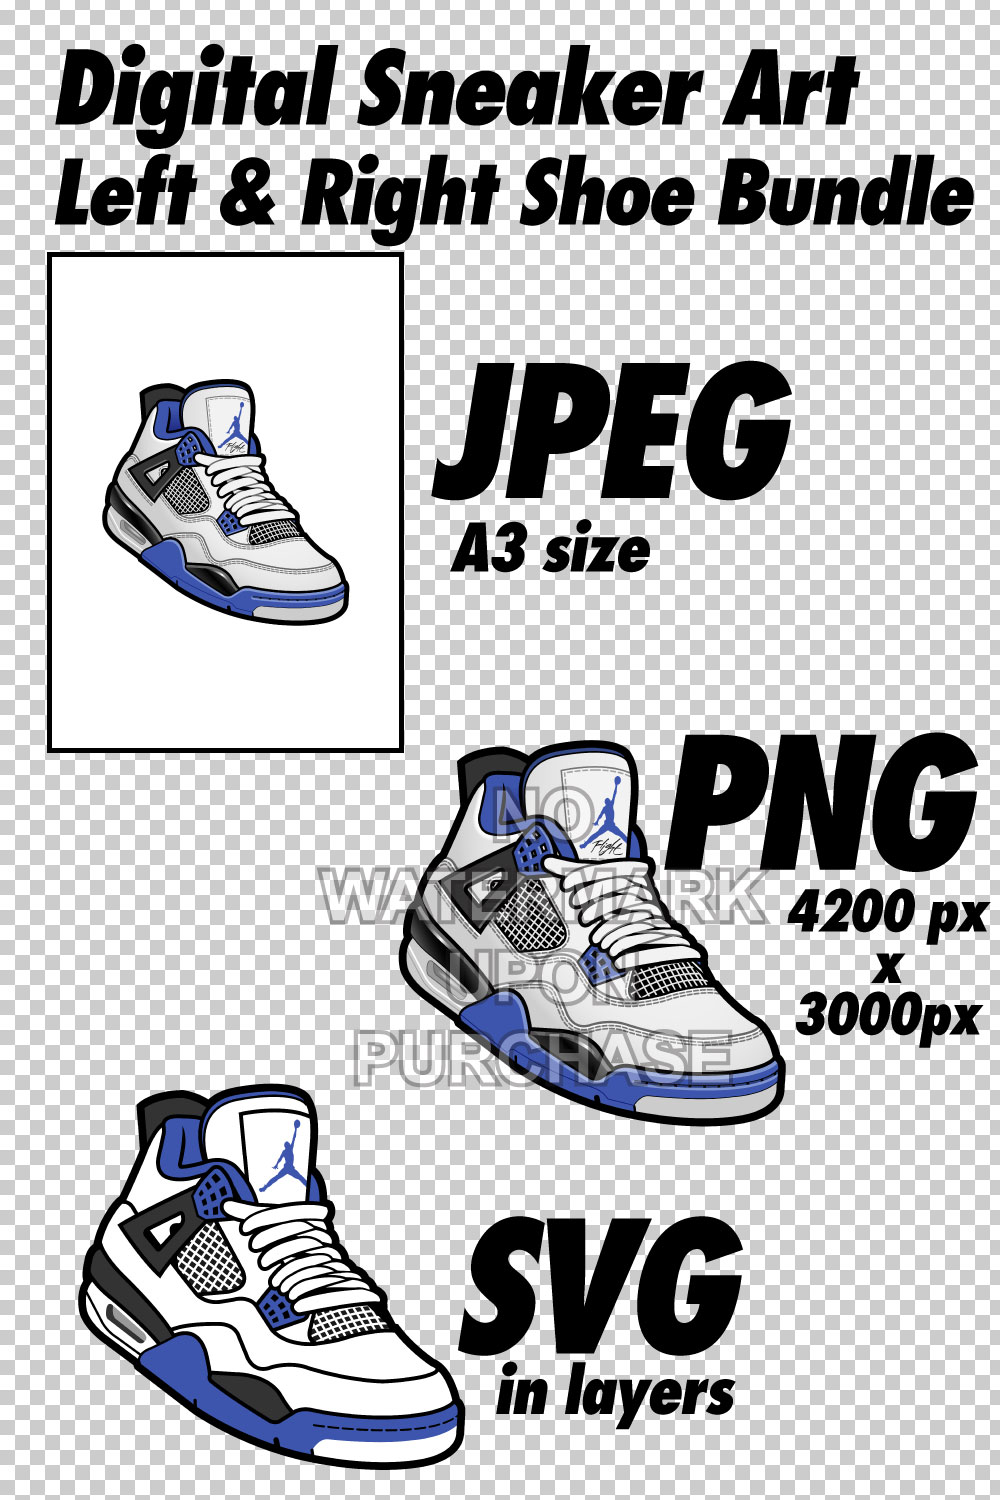 Air Jordan 4 Motorsports JPEG PNG SVG Left & Right shoe bundle digital download pinterest preview image.